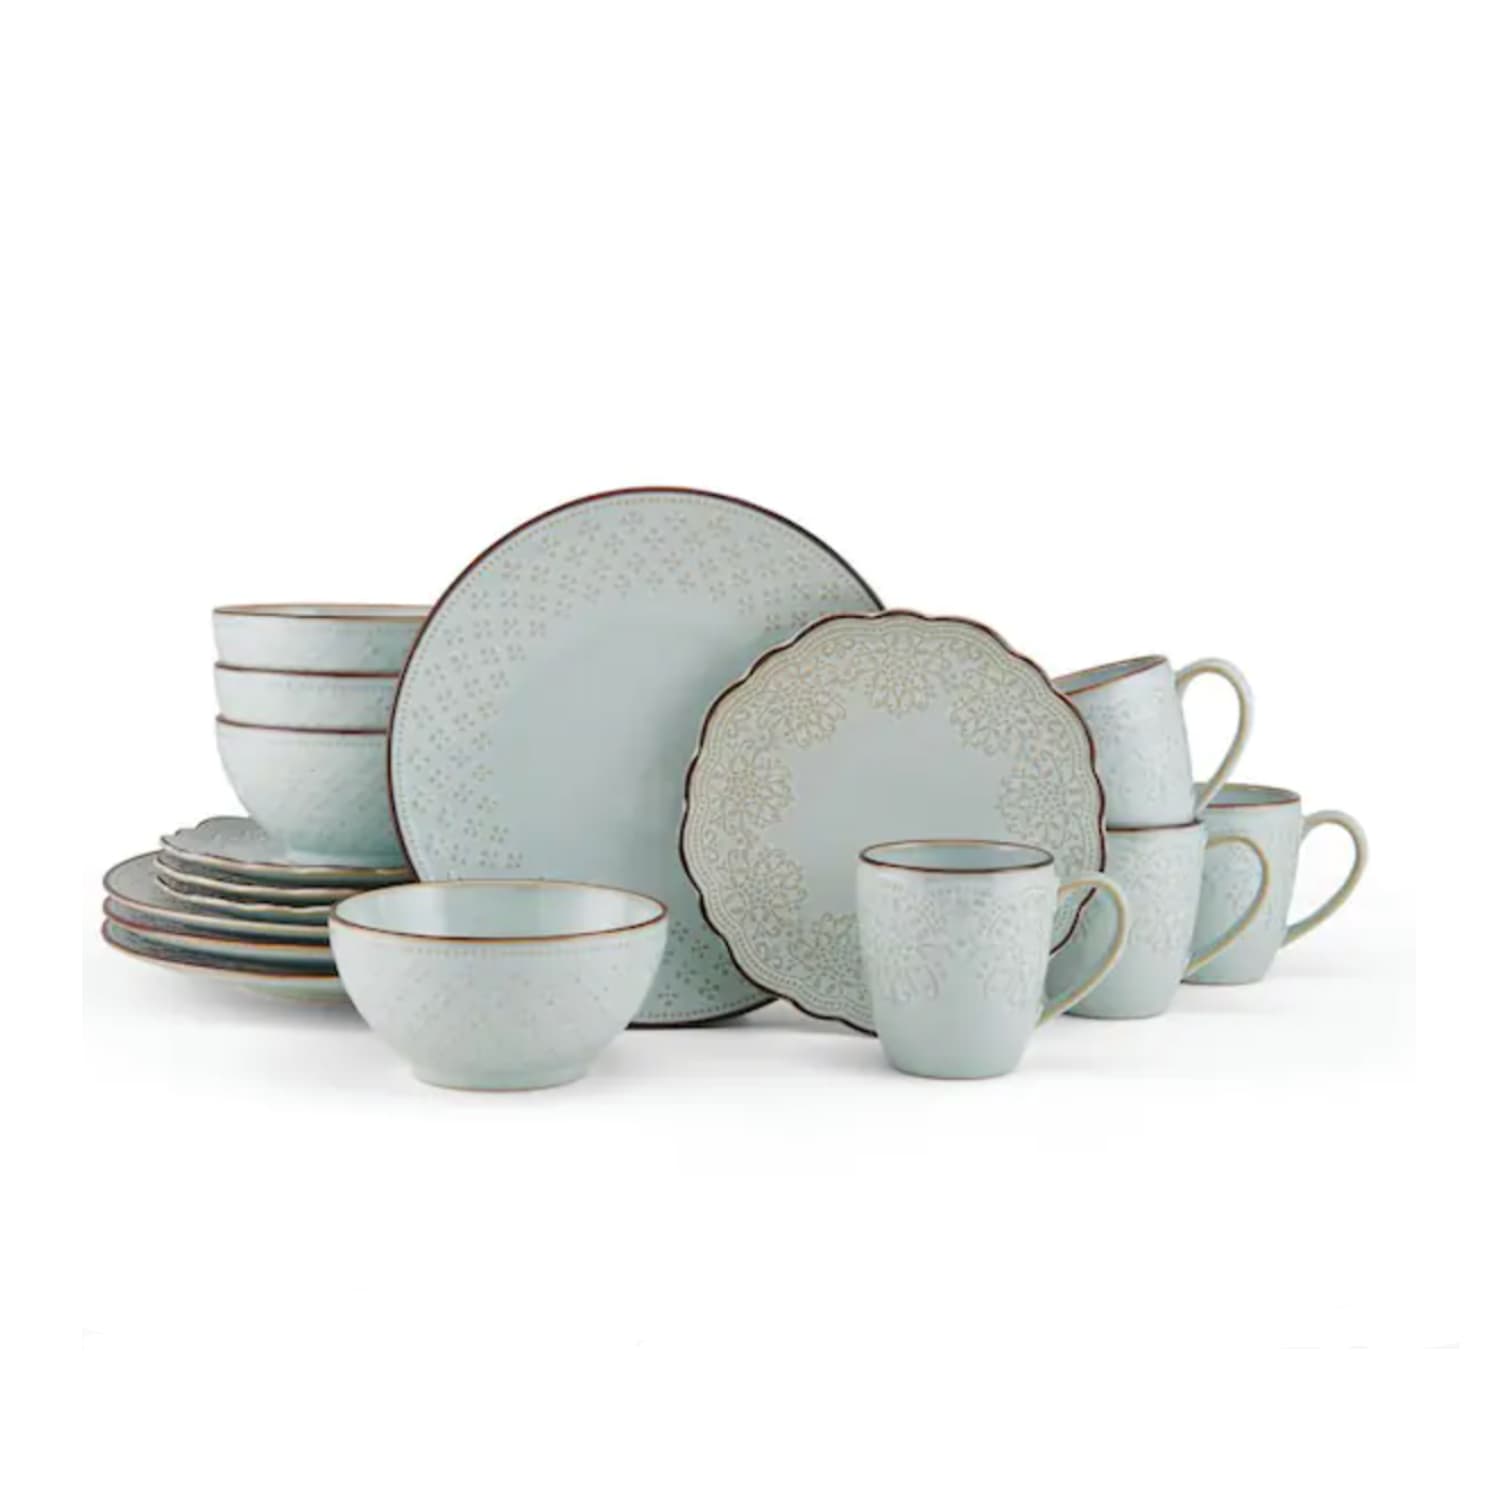 https://cdn.apartmenttherapy.info/image/upload/v1695149453/commerce/best-places-to-buy-dinnerware/joanne-white-stoneware-dinnerware-set.jpg